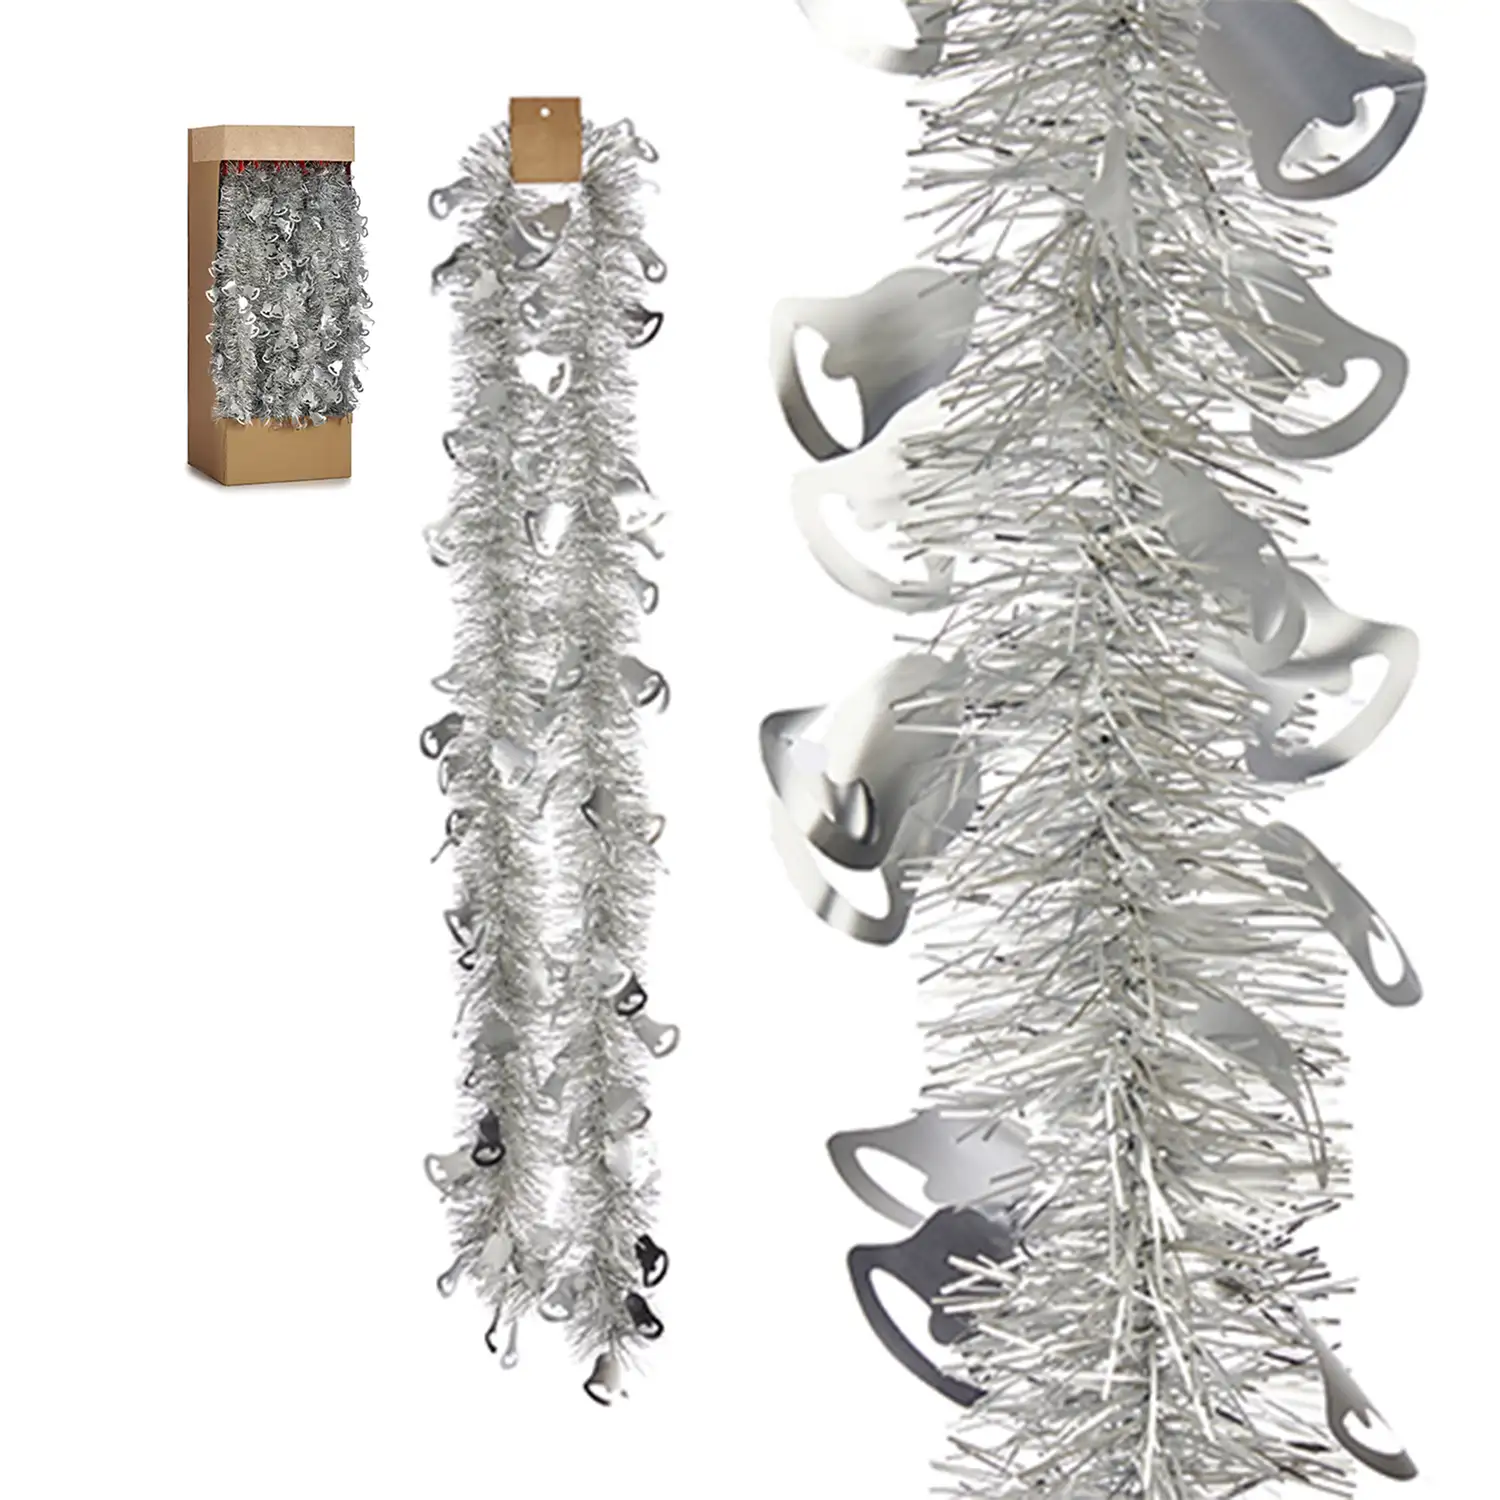 Guirnalda de espumillón navideña Boa pino plata 200x6 cms.